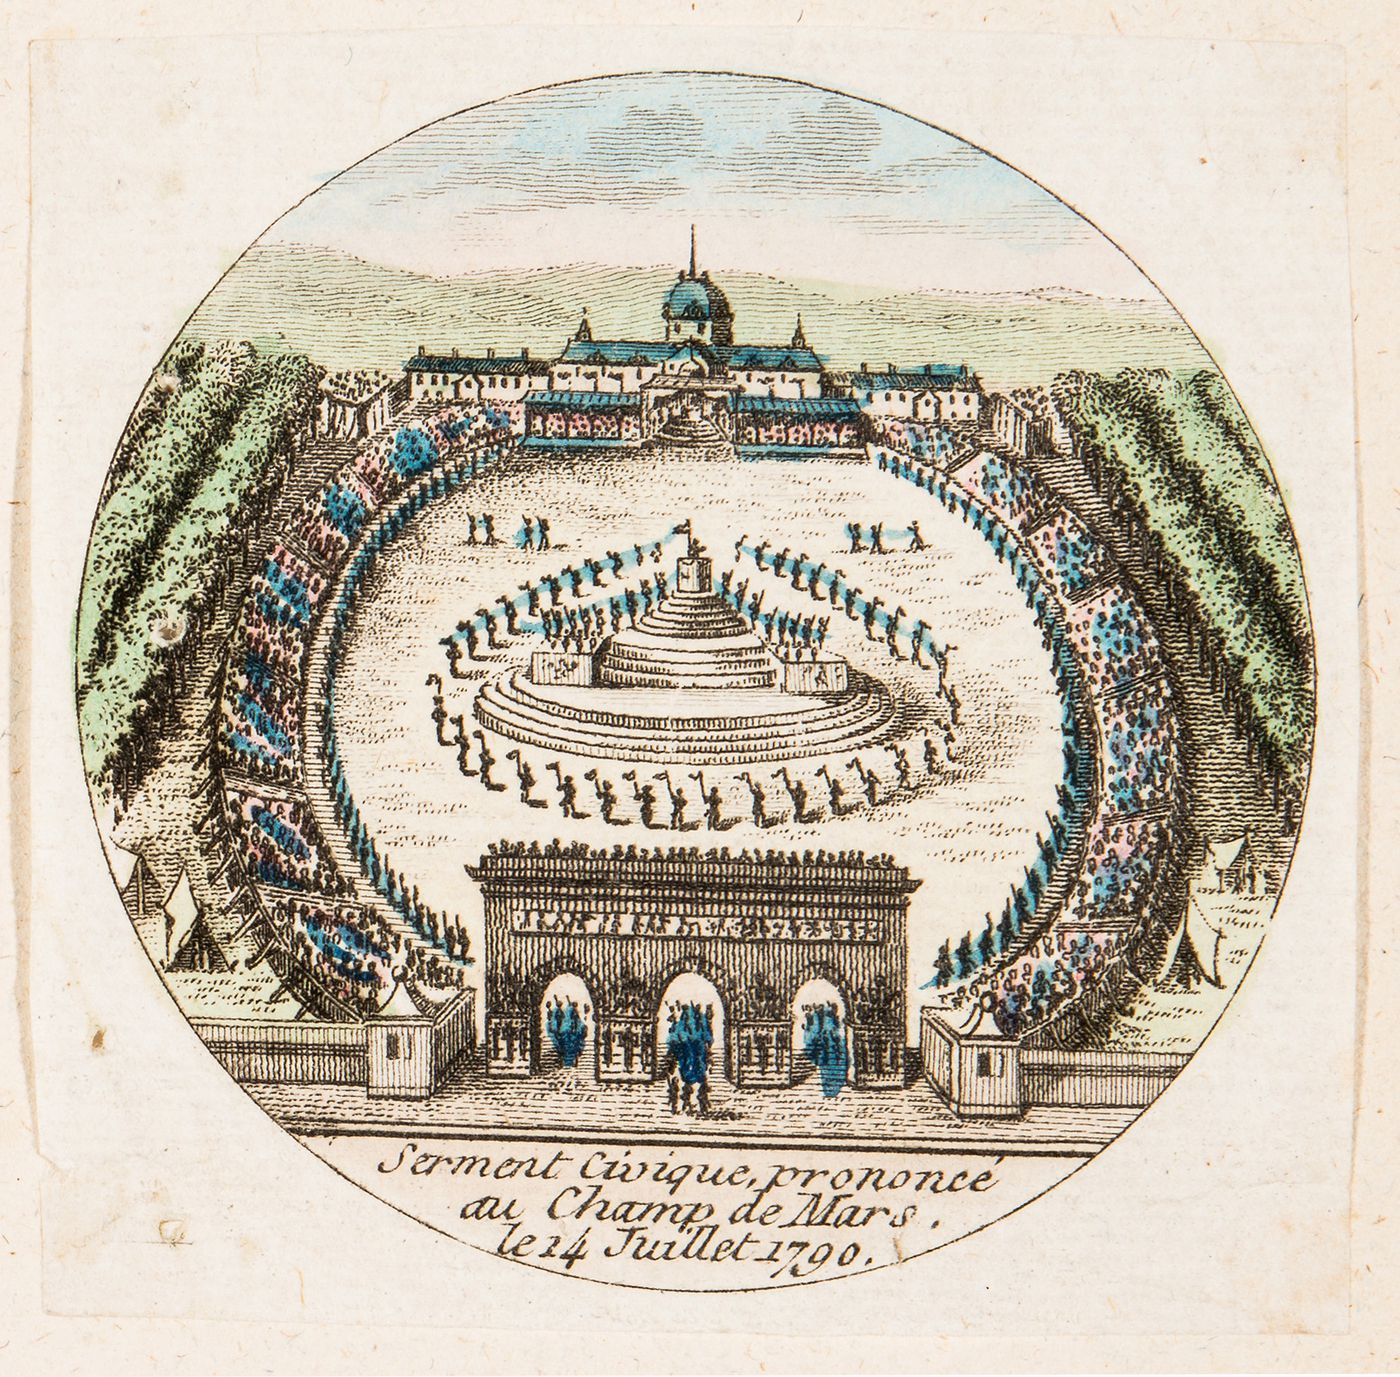 Cirque for the Confédération générale, 14 July 1790, Champ-de-Mars, Paris: View showing the pronouncement of the civic oath